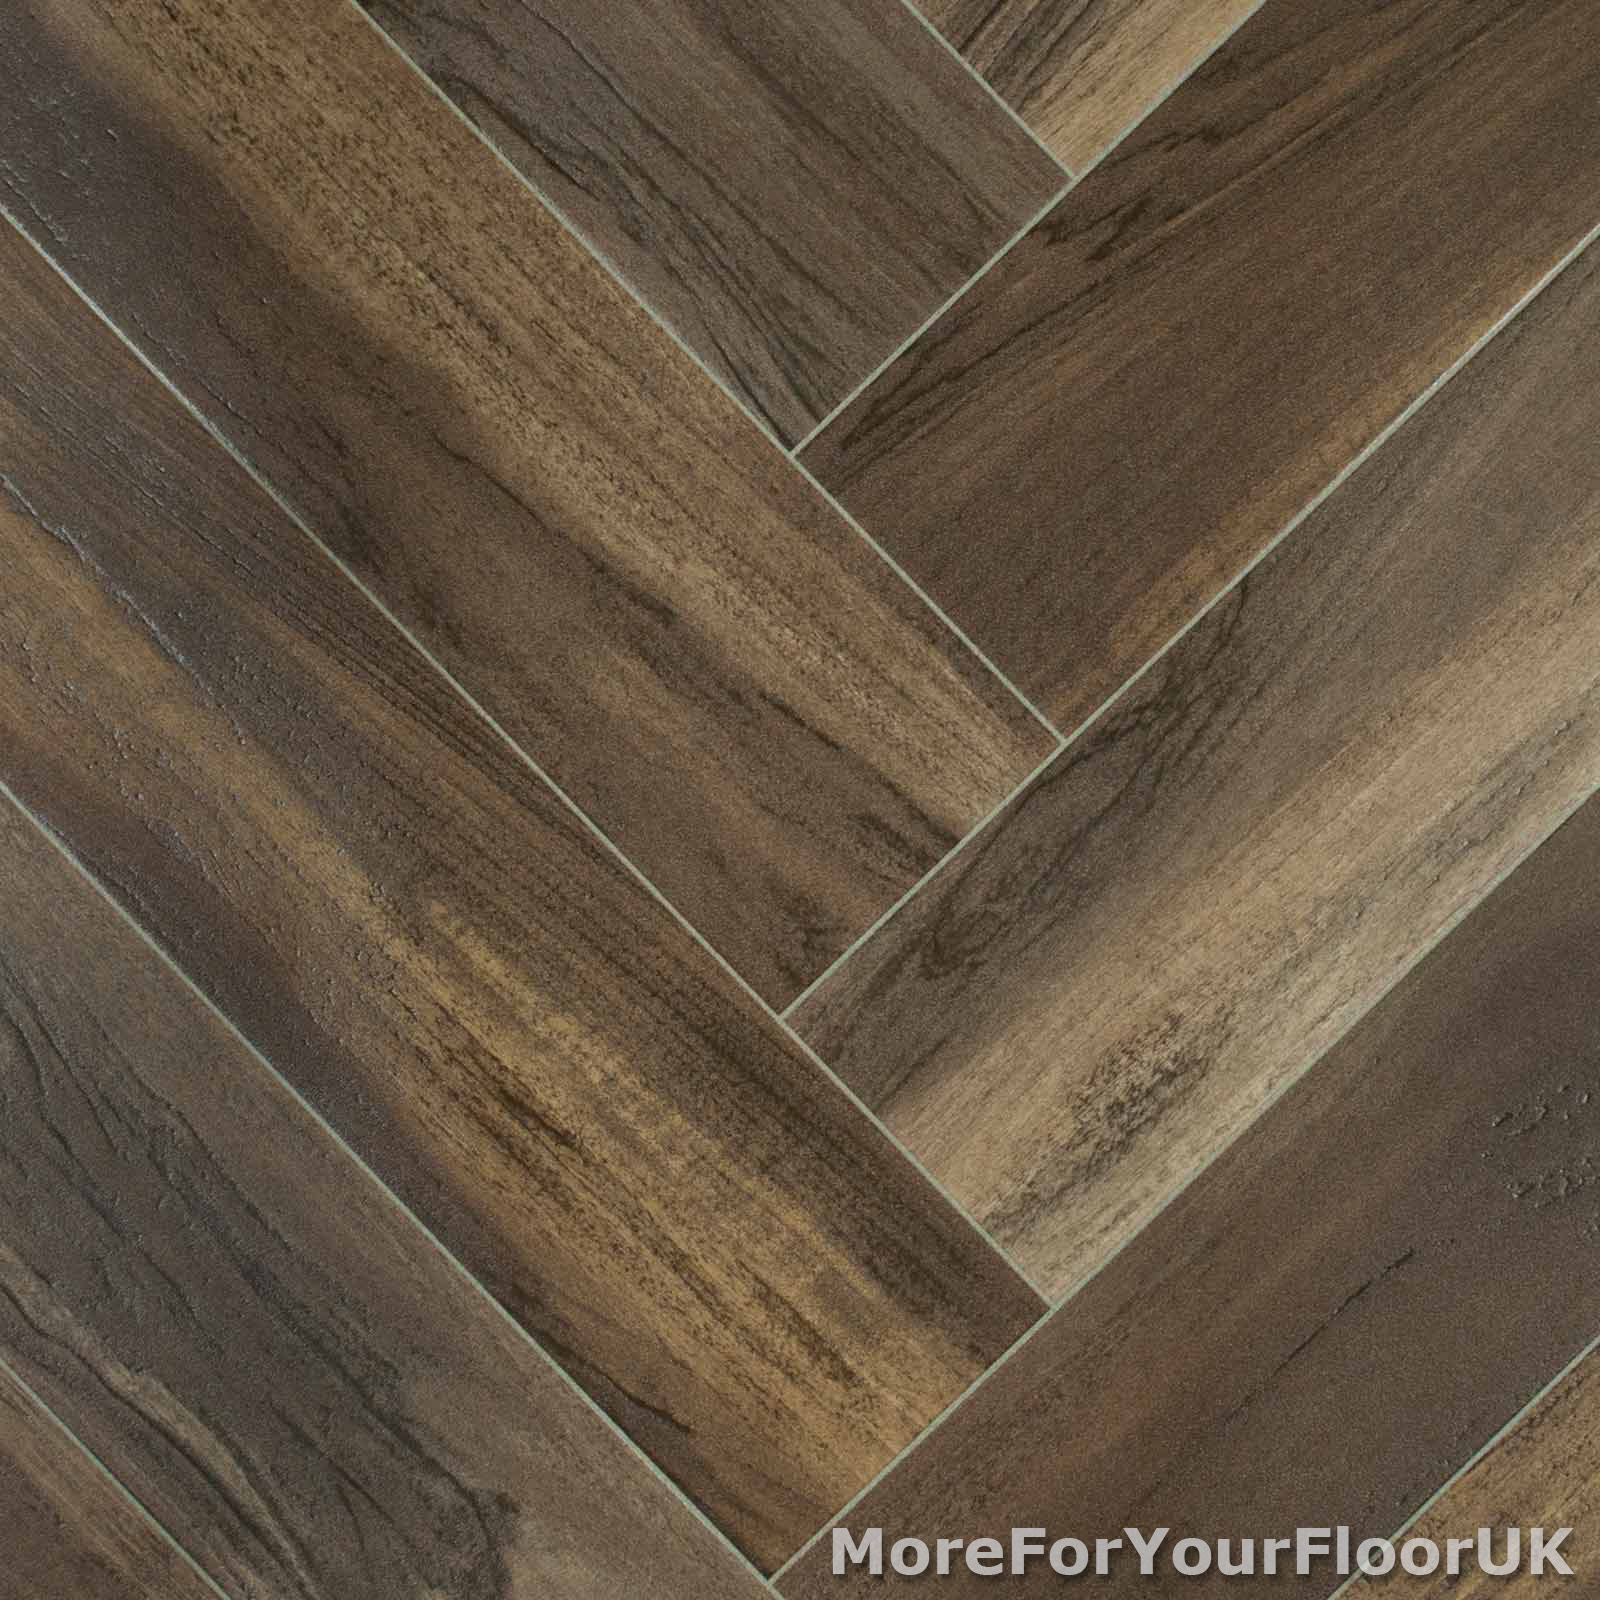 Rich Natural Parquet Wood Style Vinyl Flooring Kitchen Bathroom Lino 2m 3m 4m Ebay